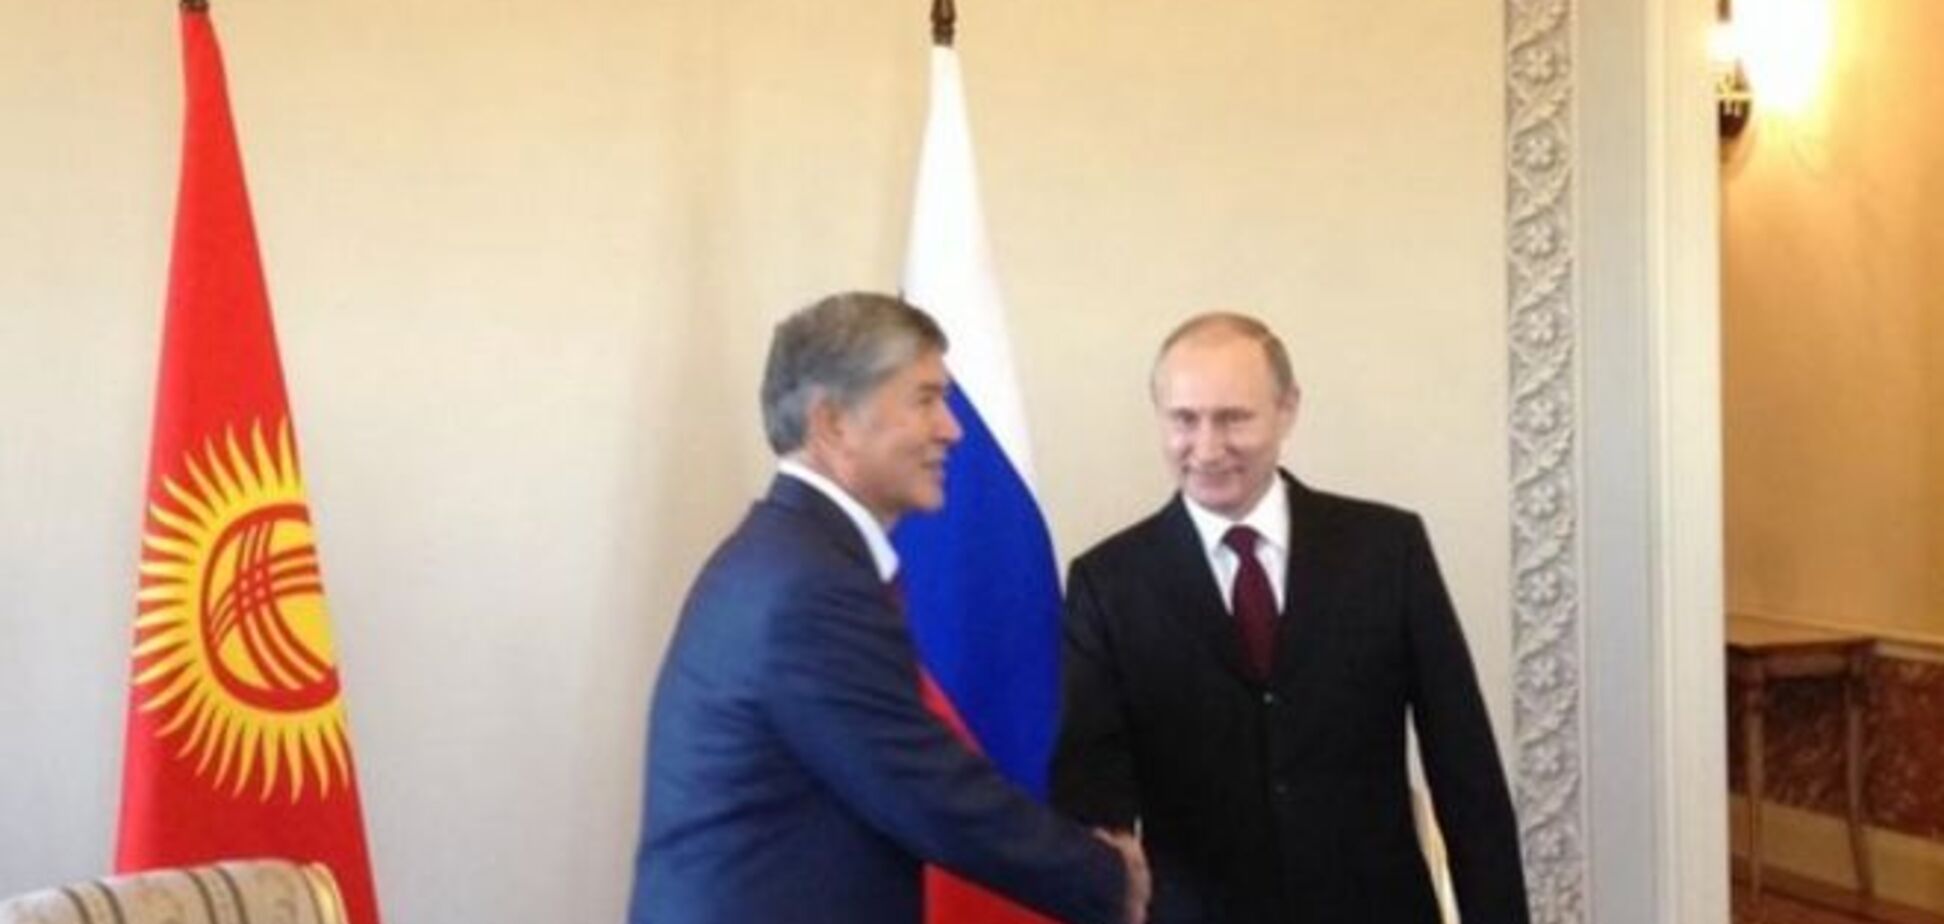 Путин на встрече с президентом Кыргызстана в Петербурге: фото и видеофакт